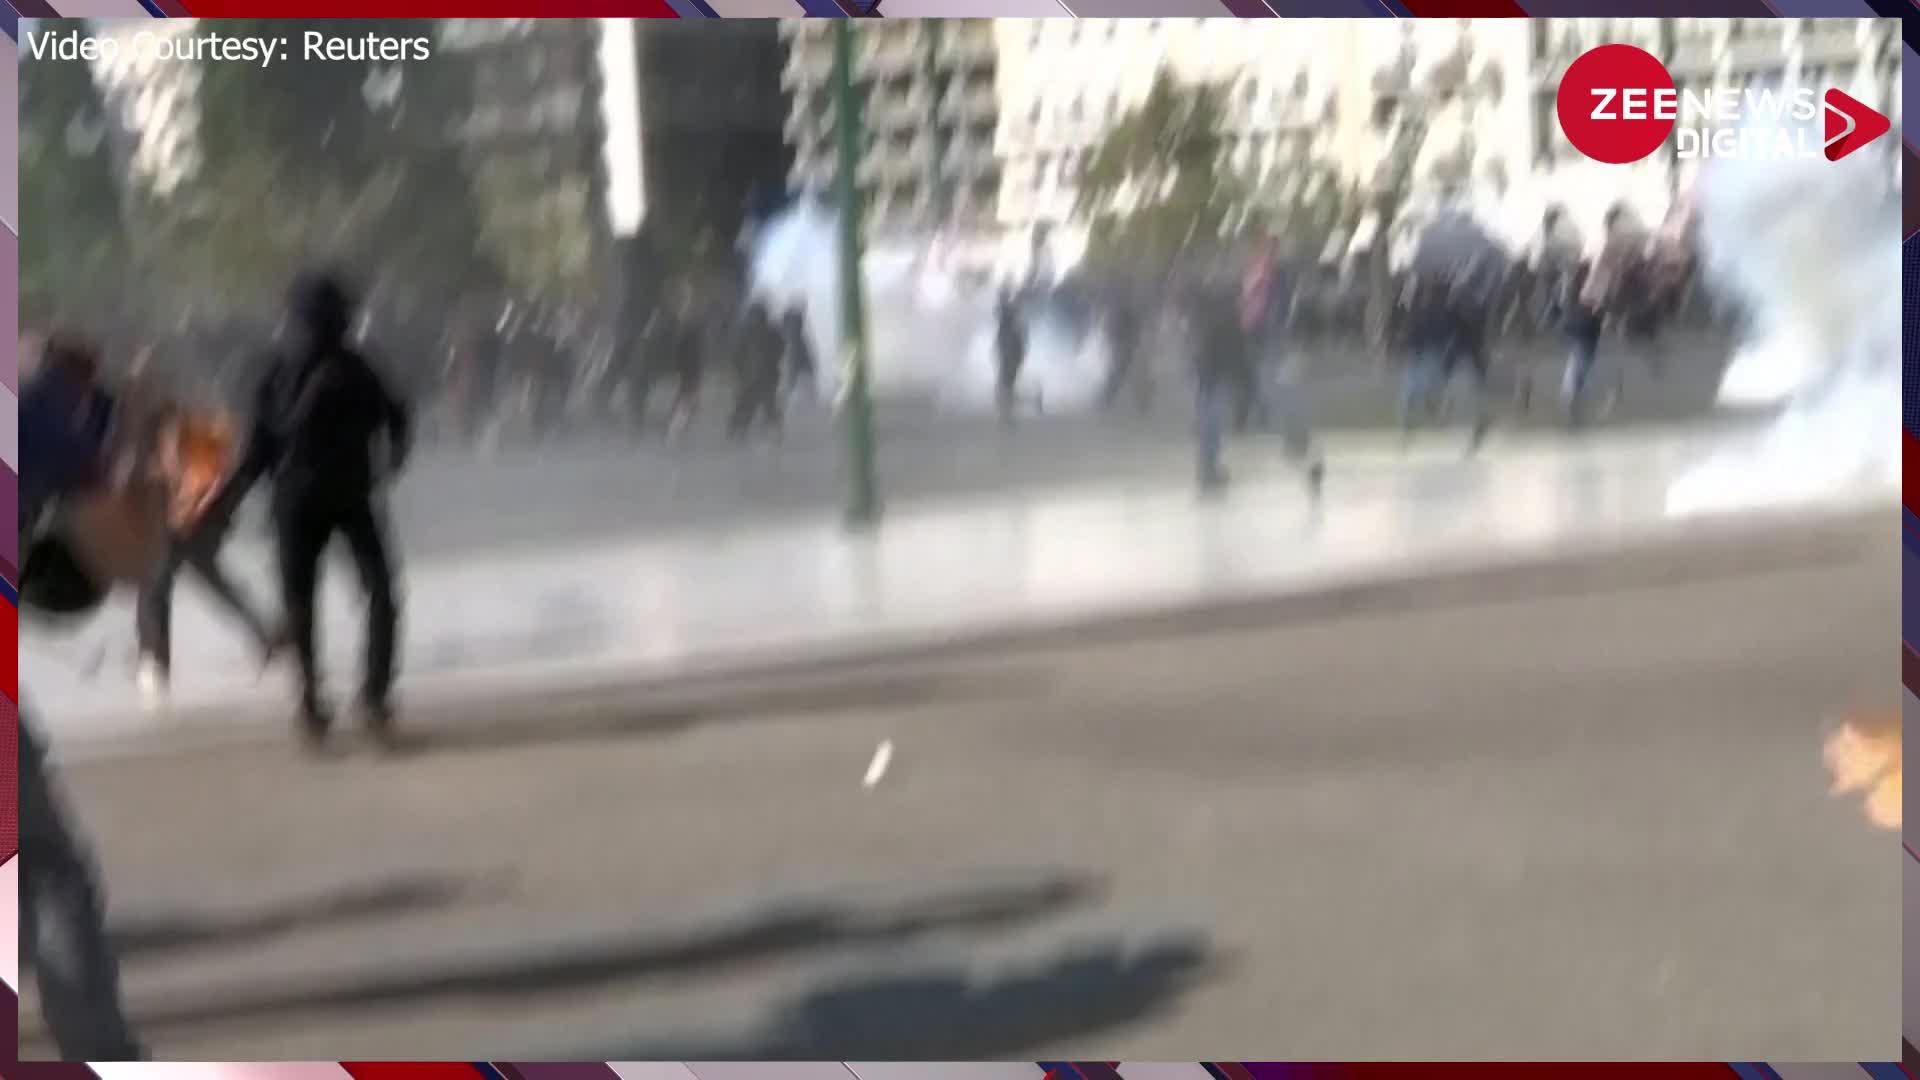 Greece में प्रदर्शनकारियों ने पुलिस पर फेंके आंसू गैस के गोले, 10 लोग पुलिस की हिरासत में